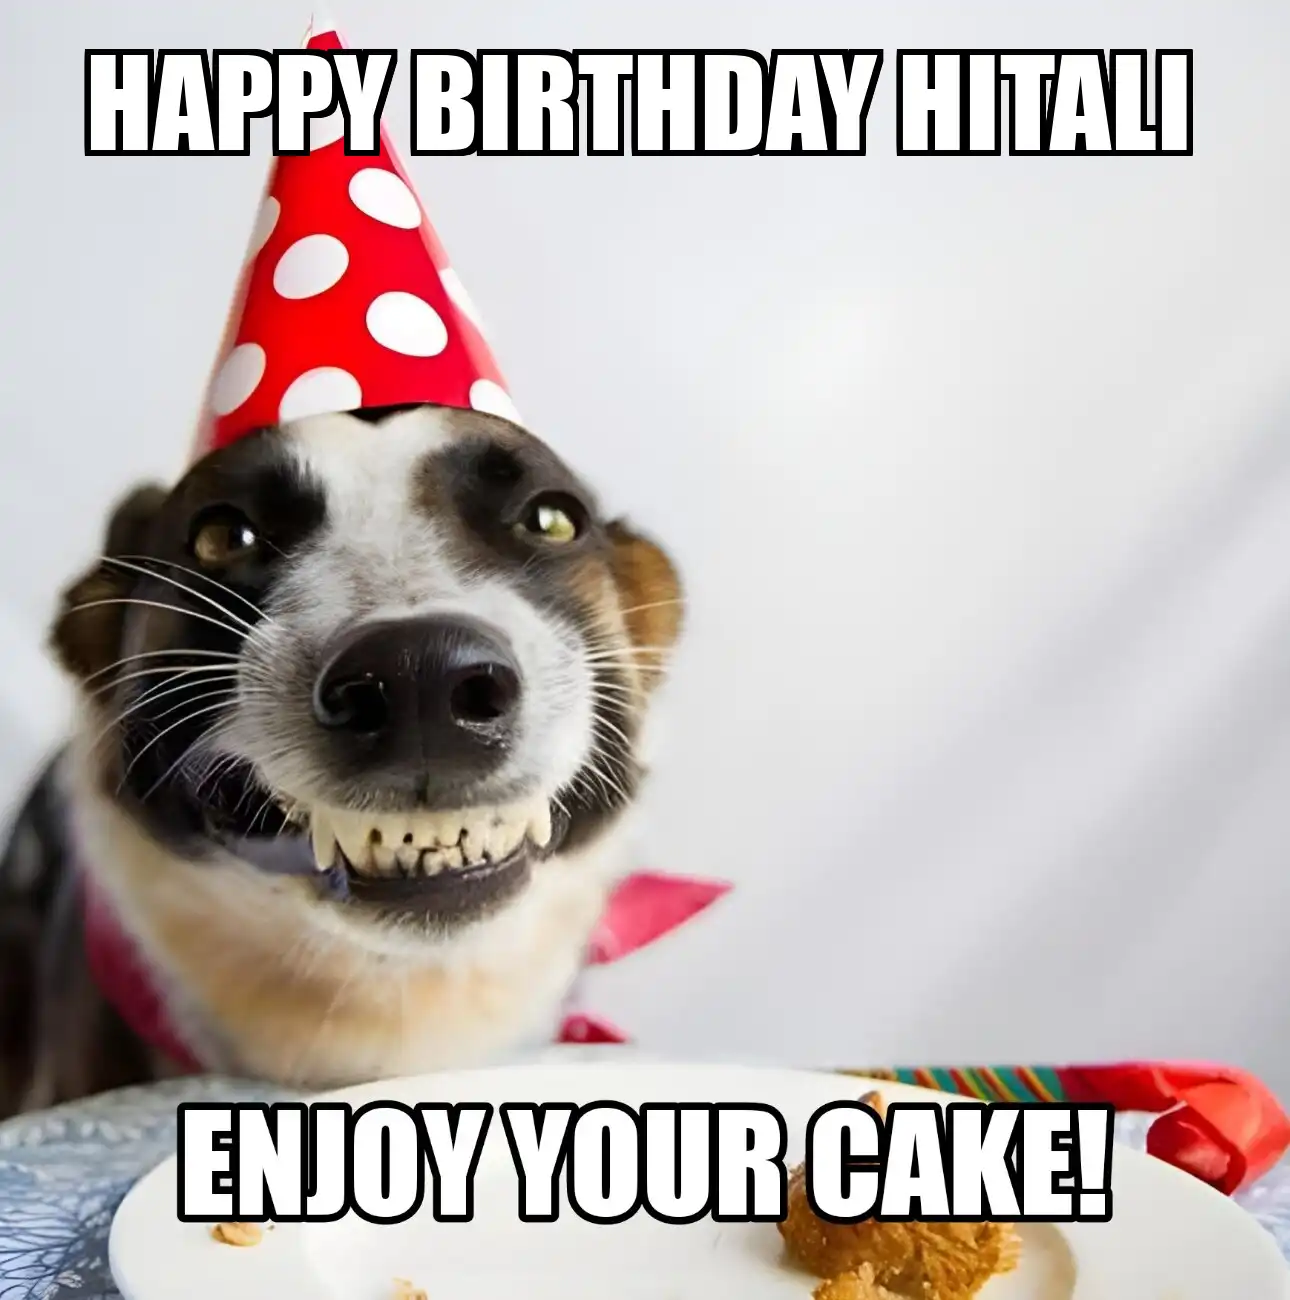 Happy Birthday Hitali Enjoy Your Cake Dog Meme